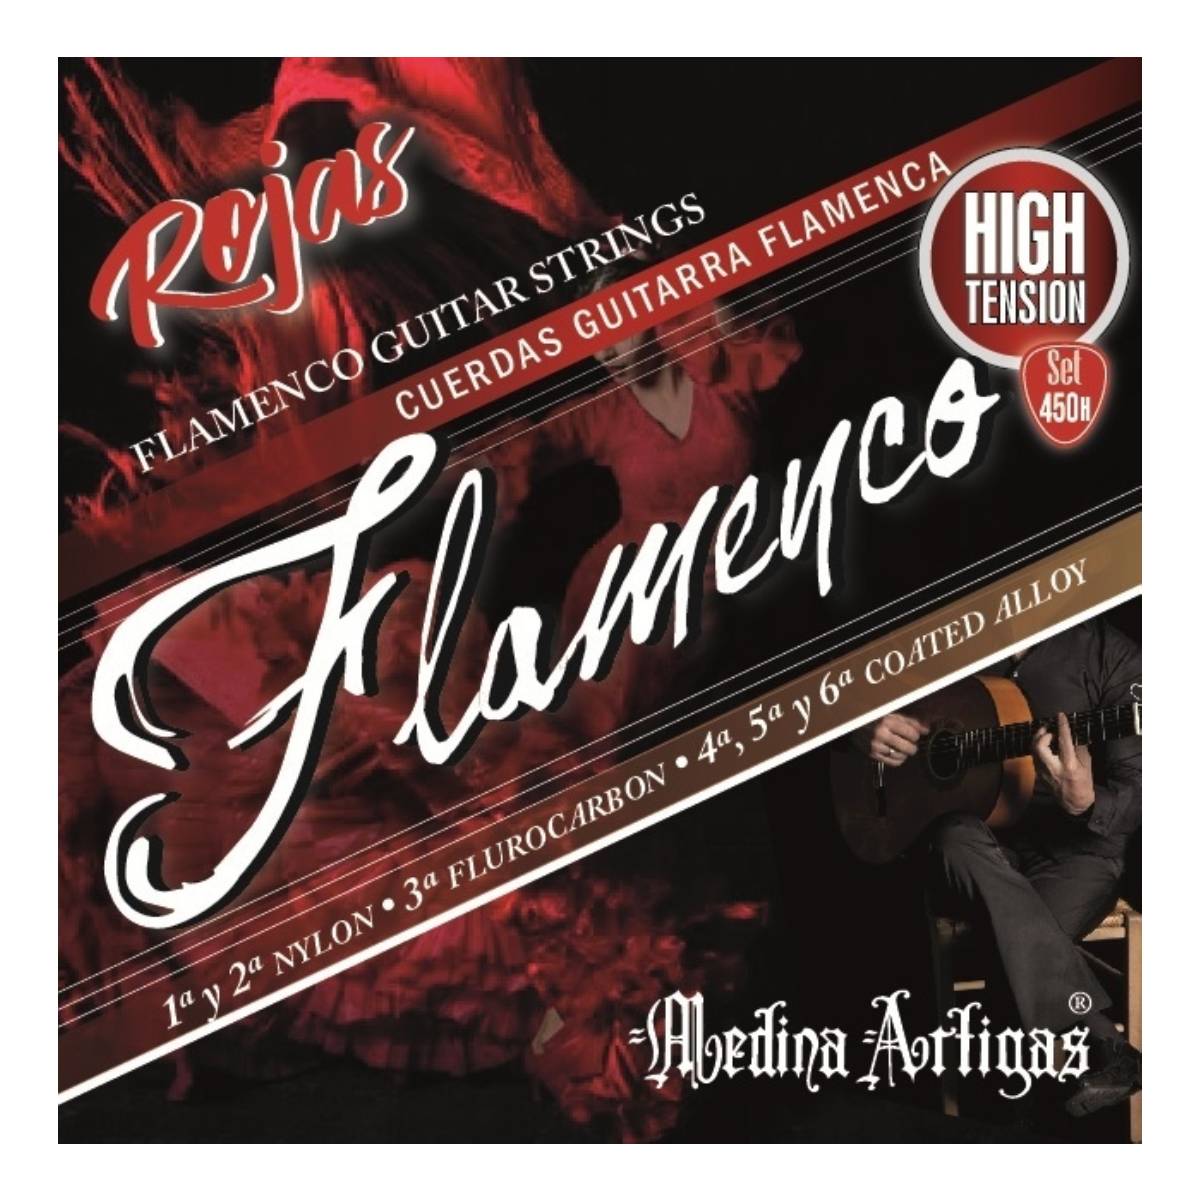 Encordado guitarra flamenca Medina Artigas HT 450H